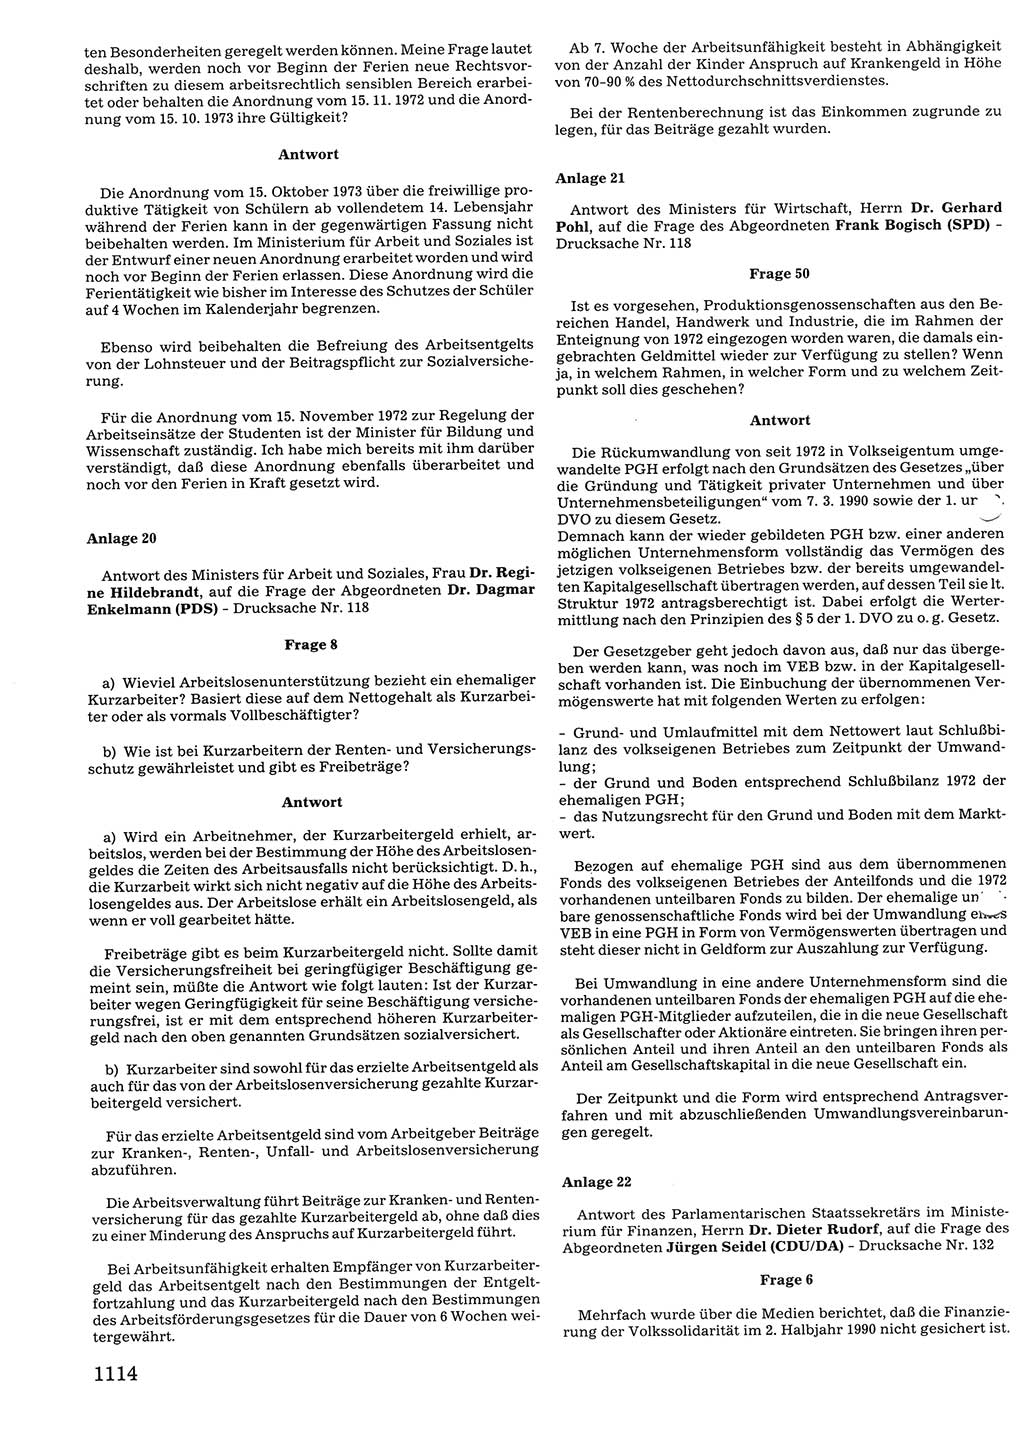 Tagungen der Volkskammer (VK) der Deutschen Demokratischen Republik (DDR), 10. Wahlperiode 1990, Seite 1114 (VK. DDR 10. WP. 1990, Prot. Tg. 1-38, 5.4.-2.10.1990, S. 1114)